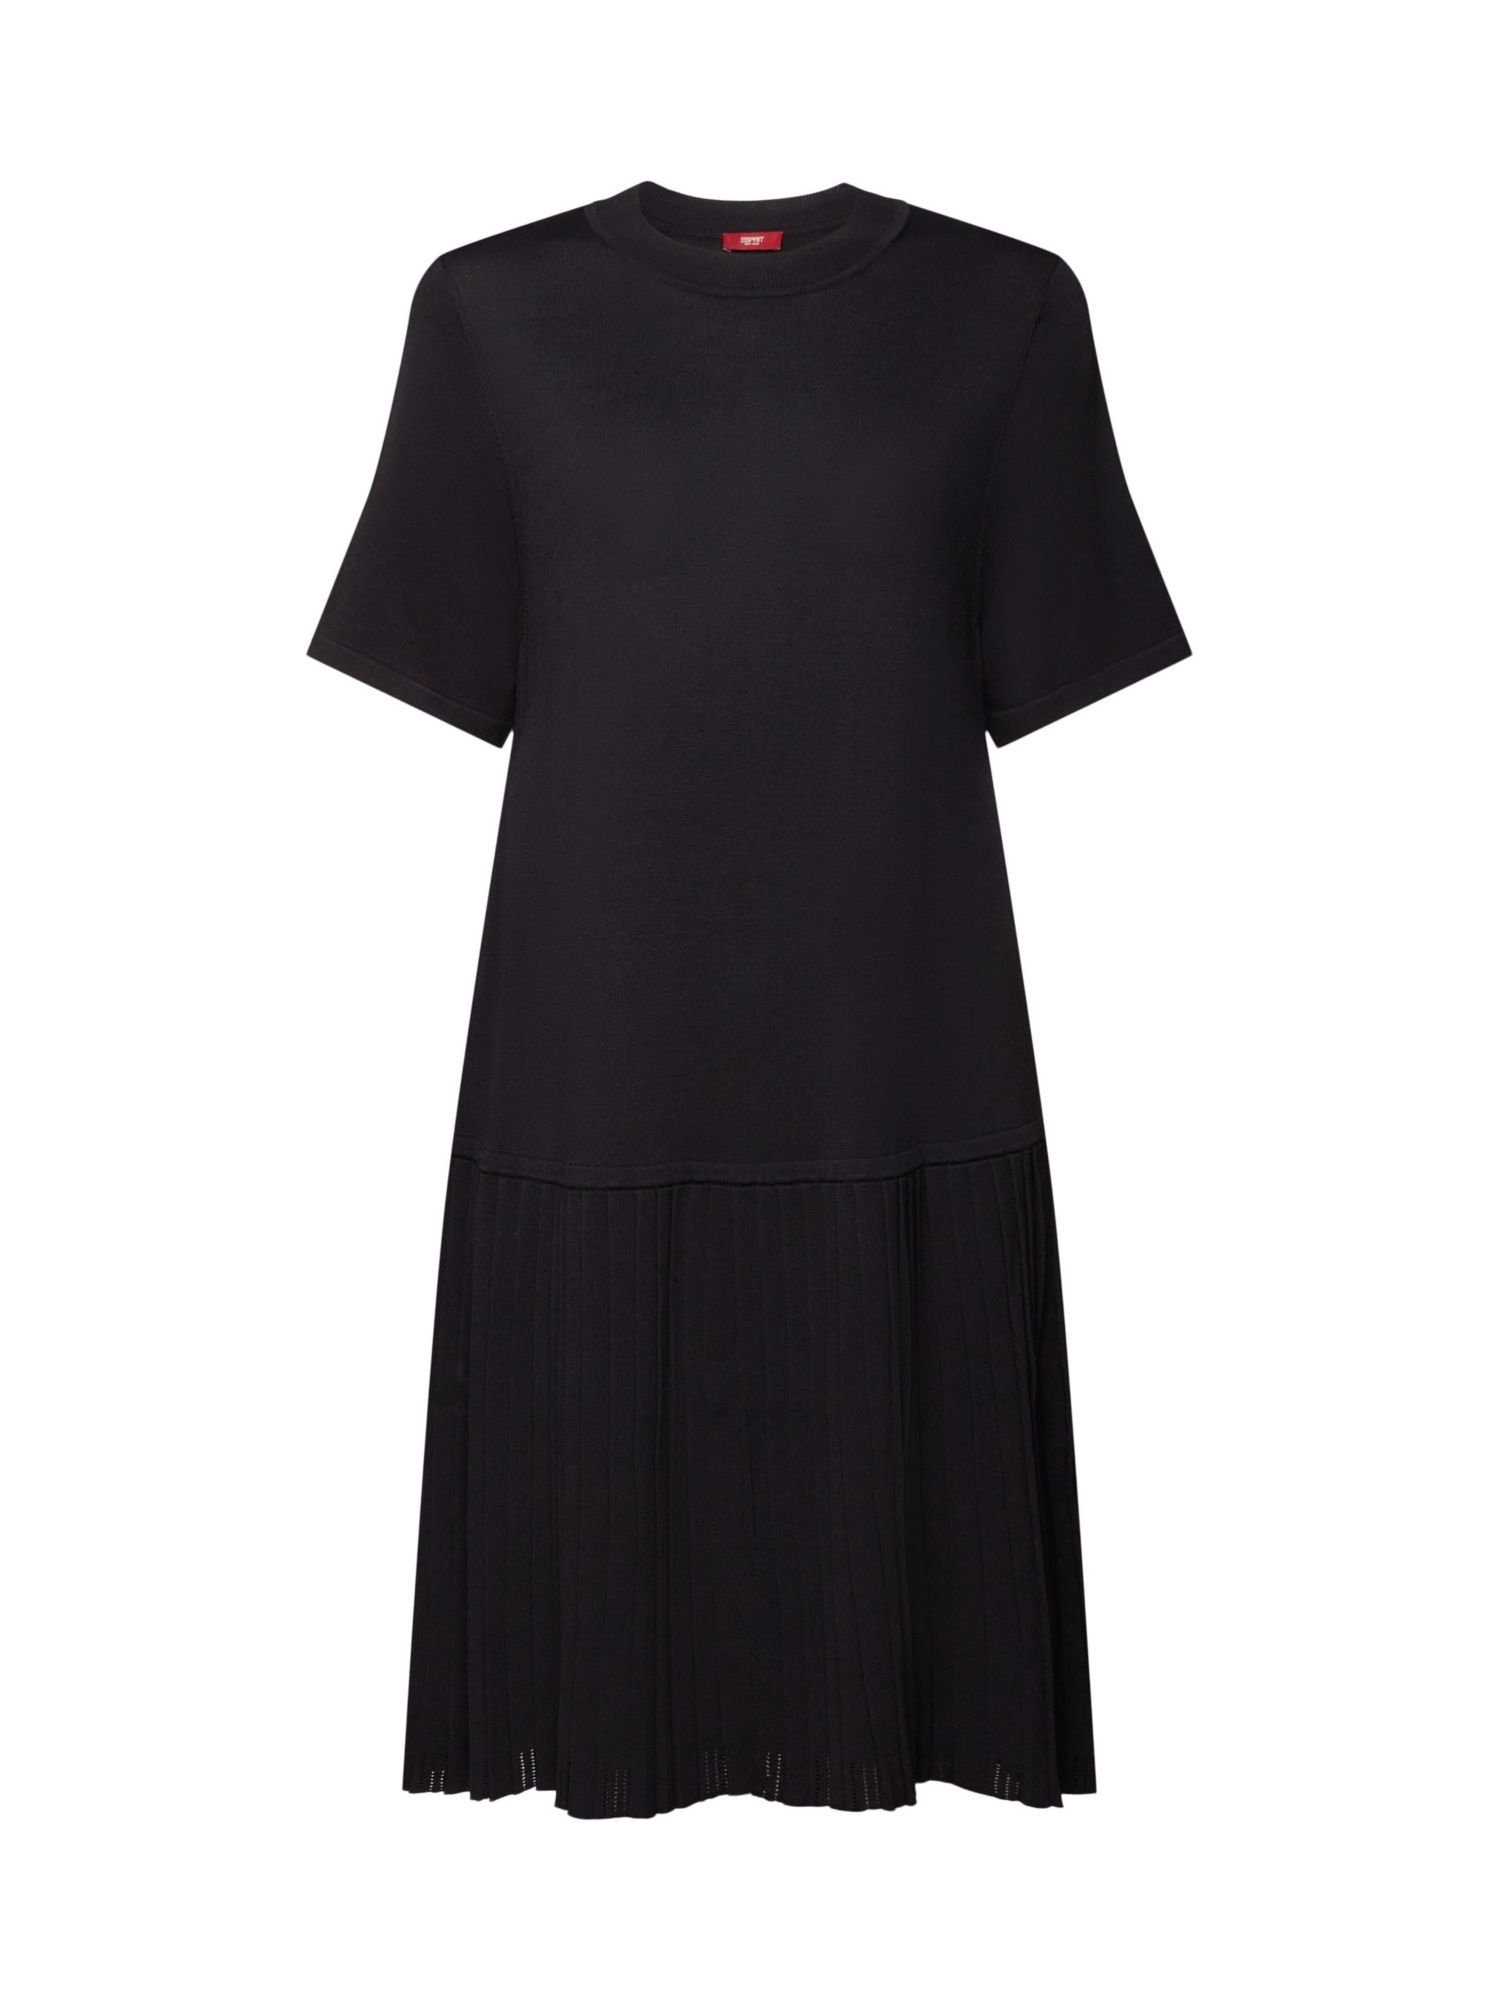 Esprit Collection Minikleid Plissiertes Kleid mit tiefer Taille